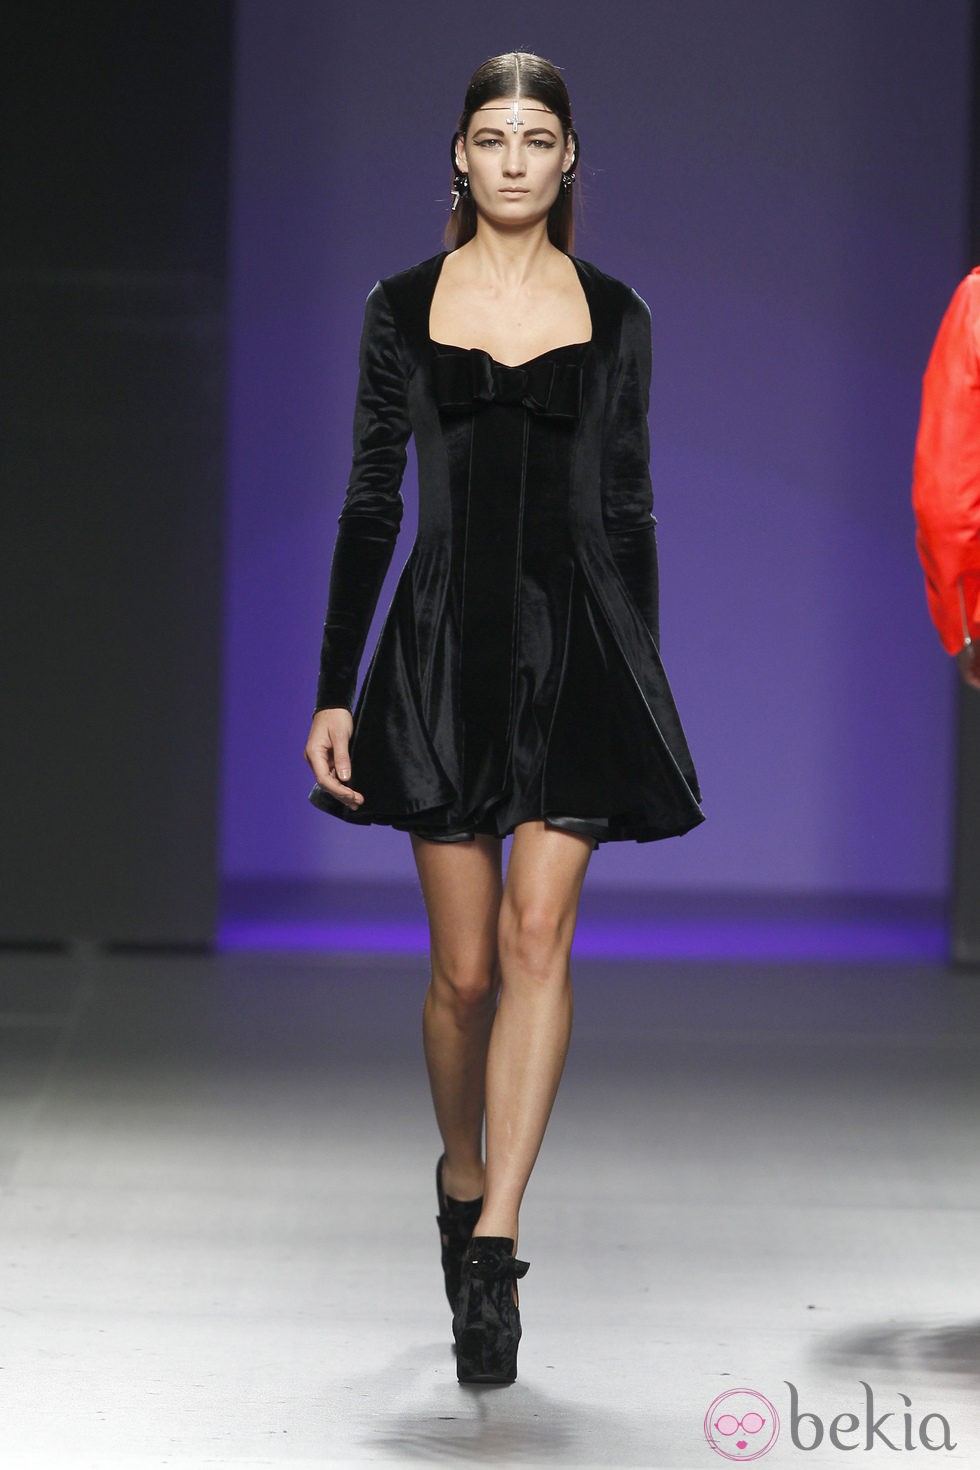 Vestido negro de la colección otoño/invierno 2012/2013 de María Escoté